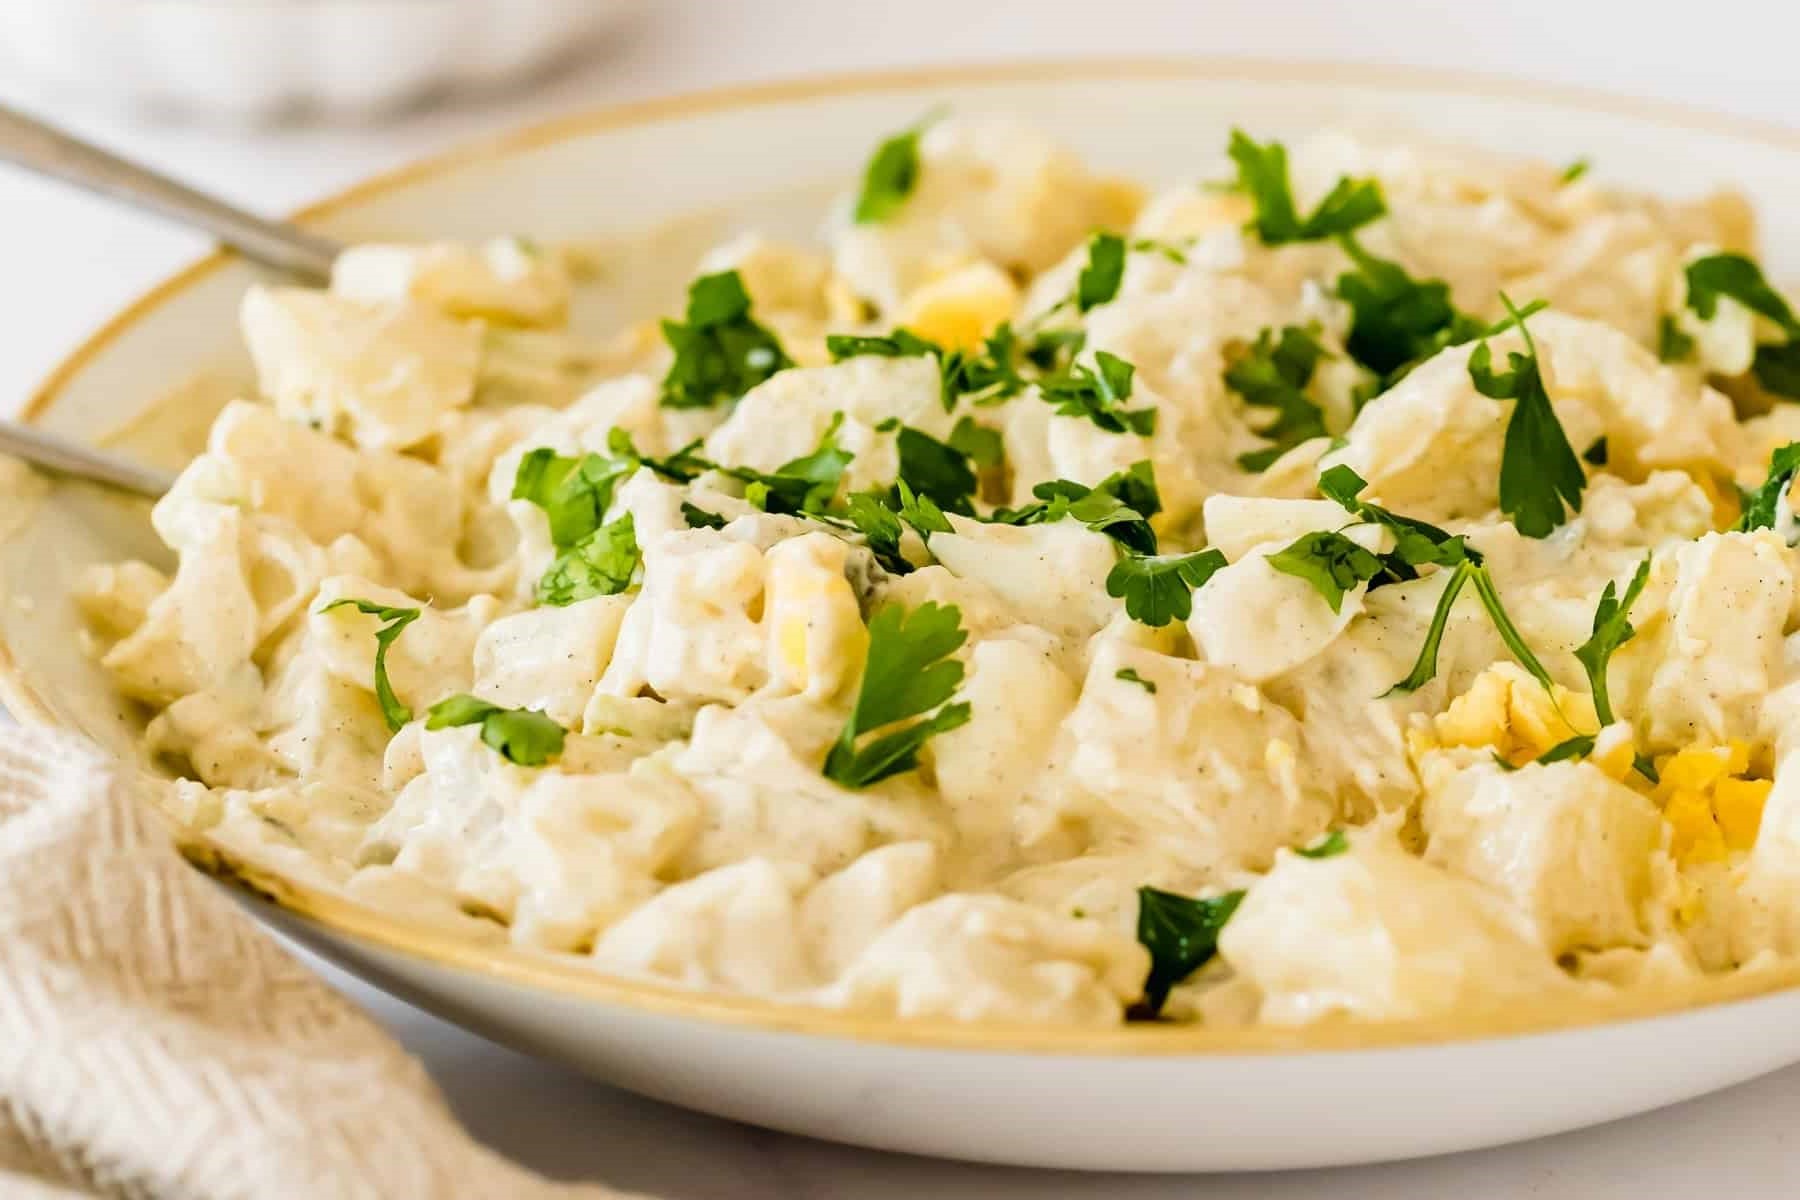 Instant Pot Potato Salad Recipe